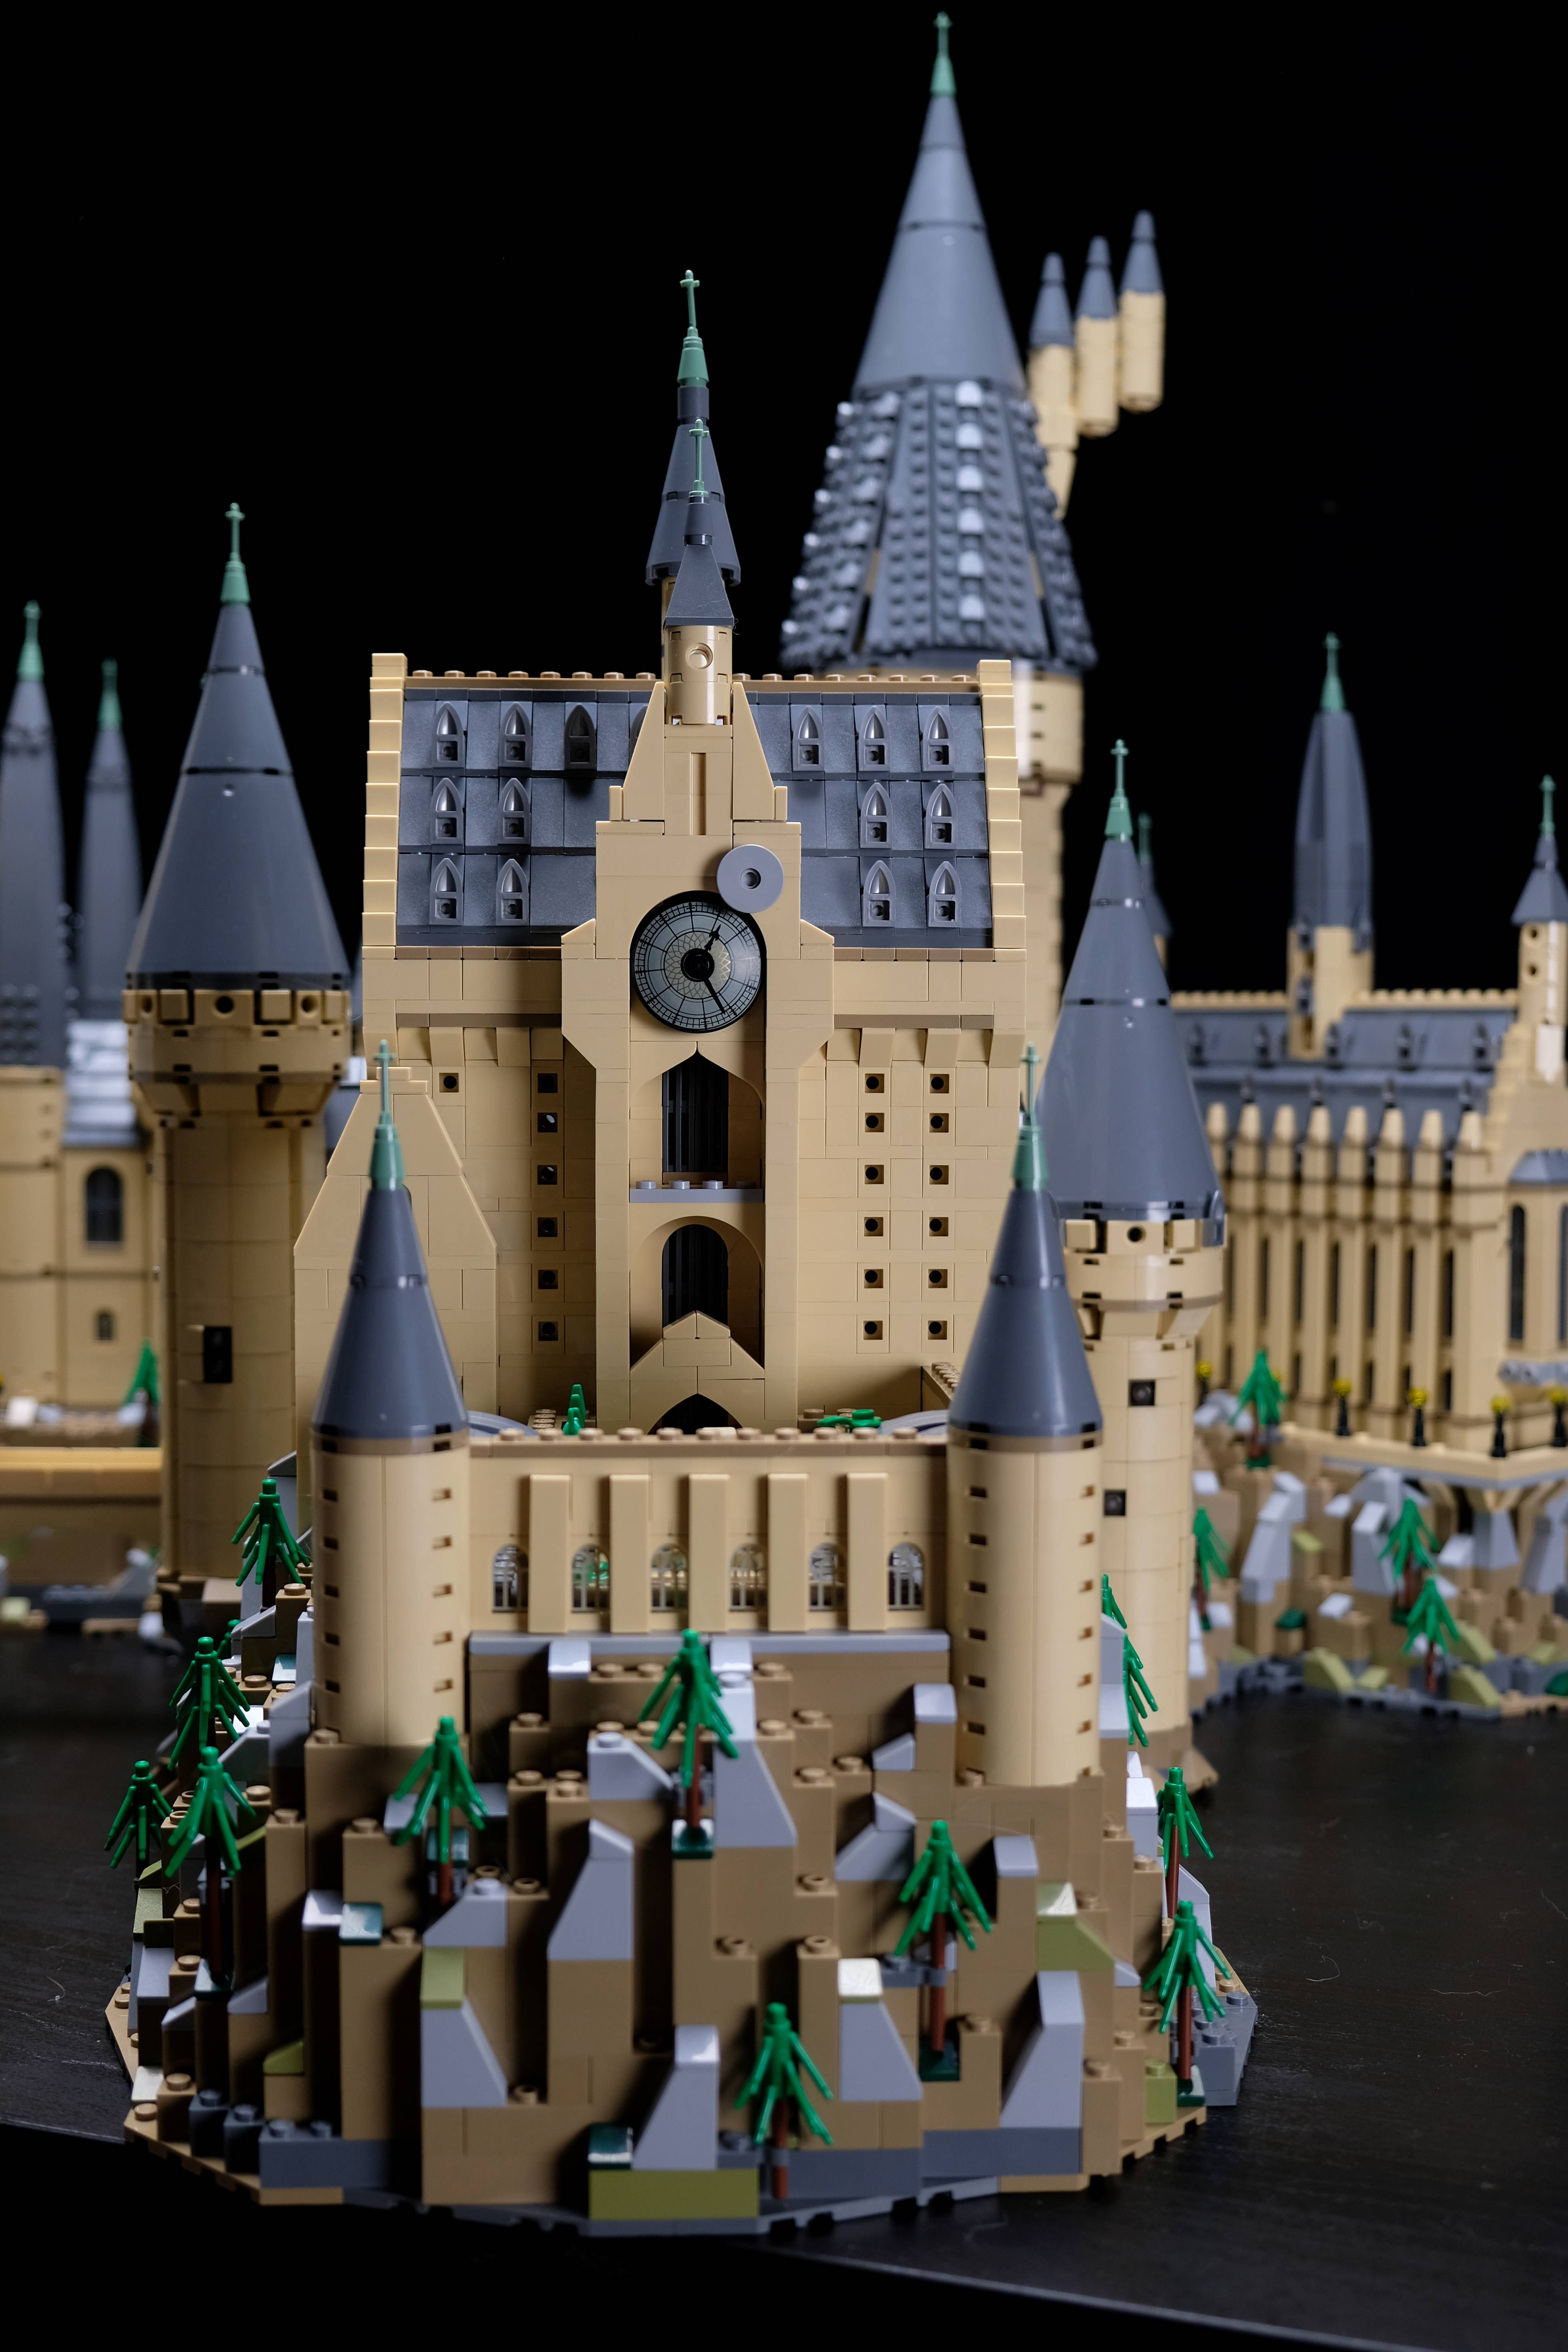 Il Castello di Hogwarts LEGO in formato extra-large